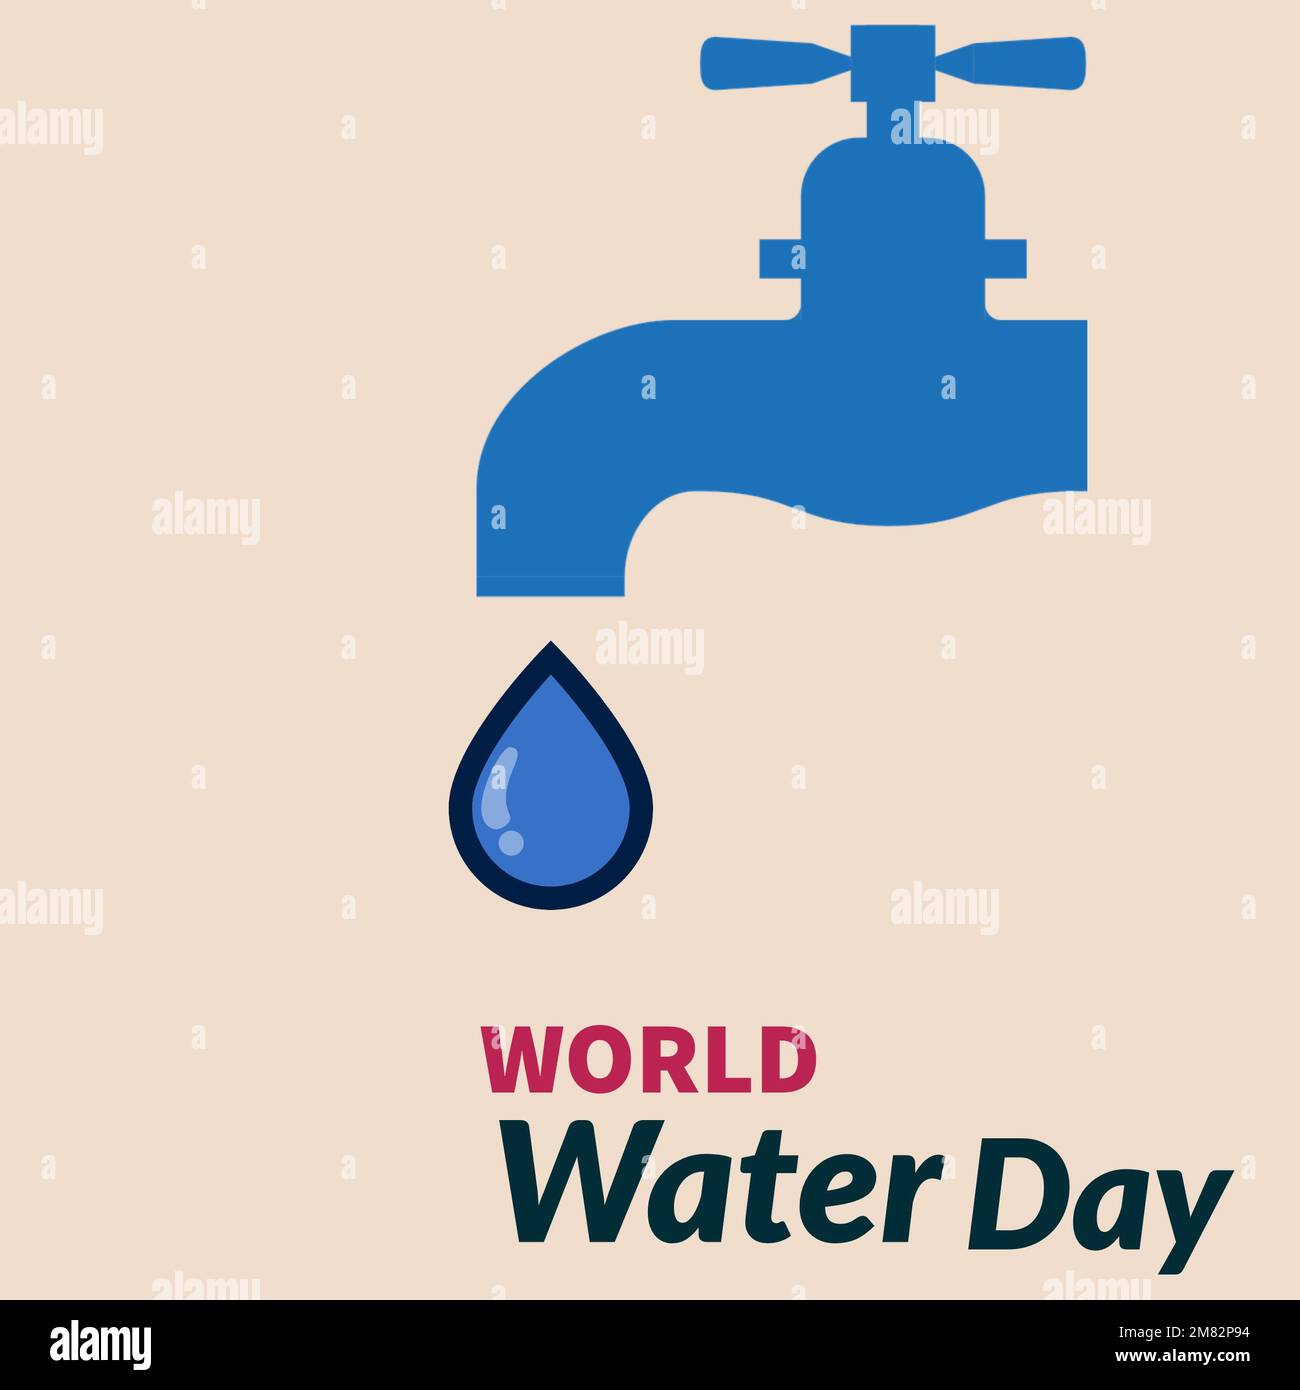 La tipografia del logo del World Water Day Concept. Ogni goccia conta. Risparmiare acqua salvare la vita, concetto di protezione ambientale mondiale - Giornata dell'ambiente Foto Stock